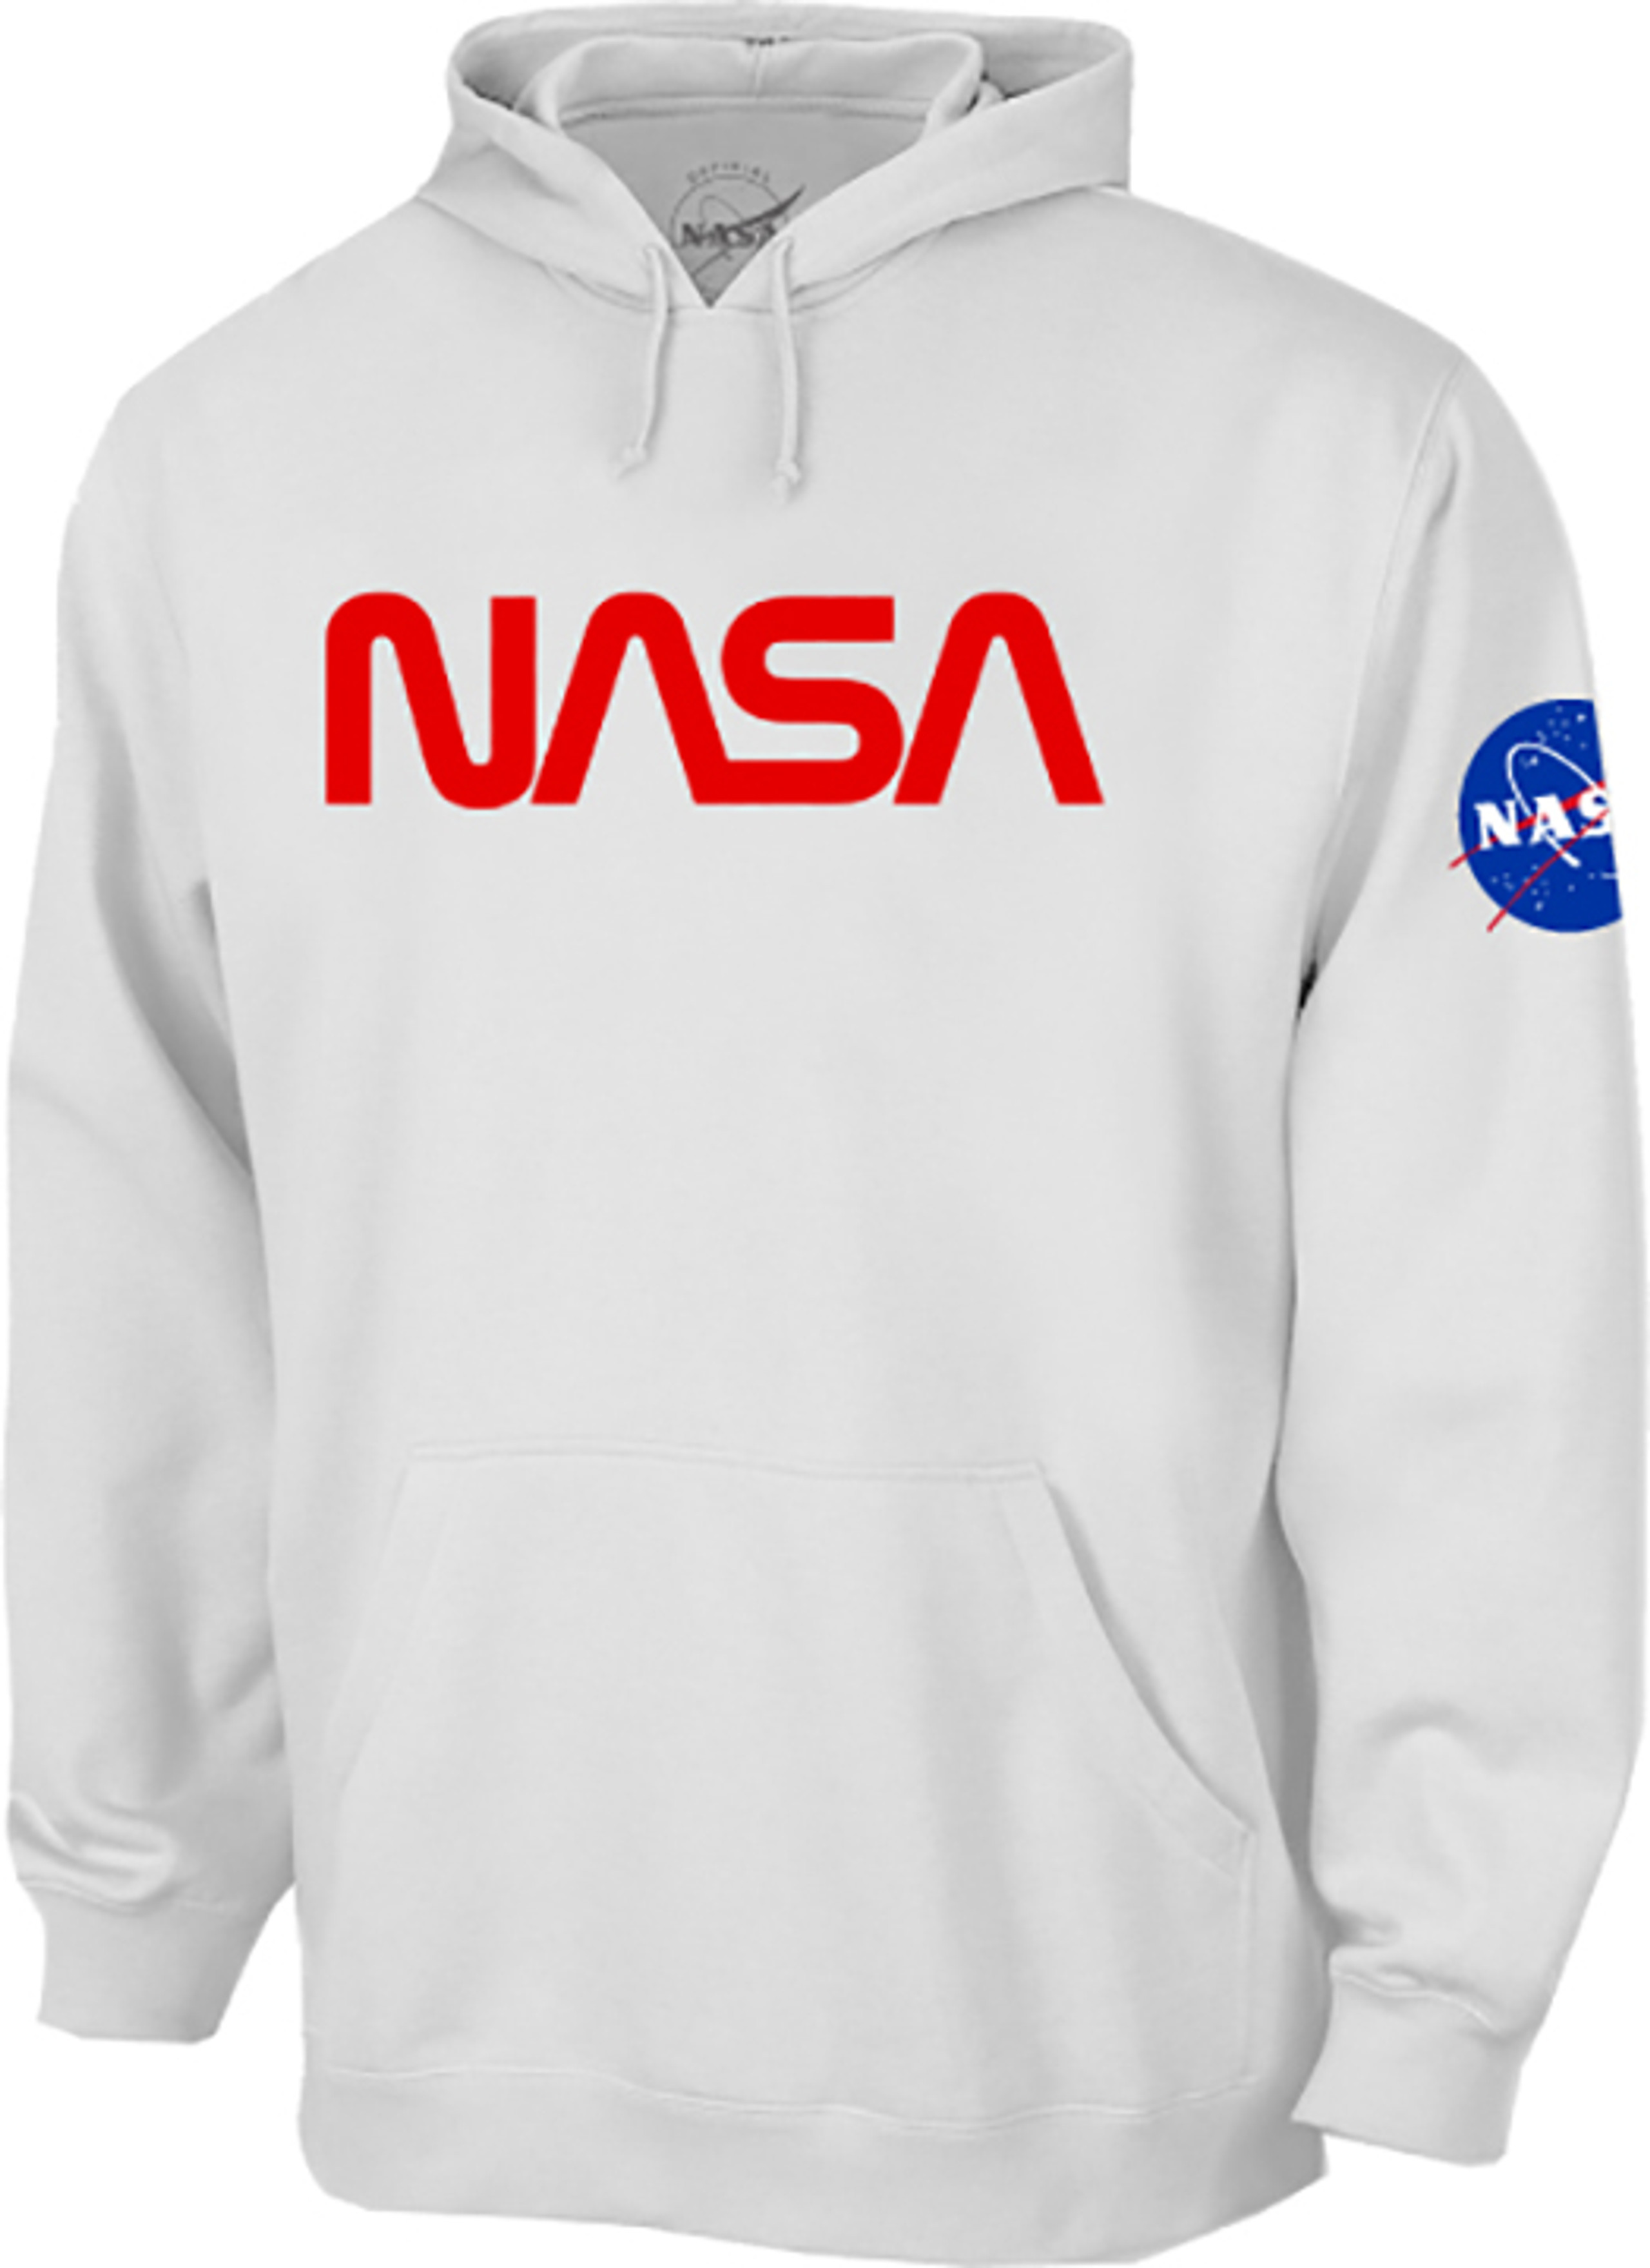 Official NASA Gear Logo - Tiburon Women's Jacket